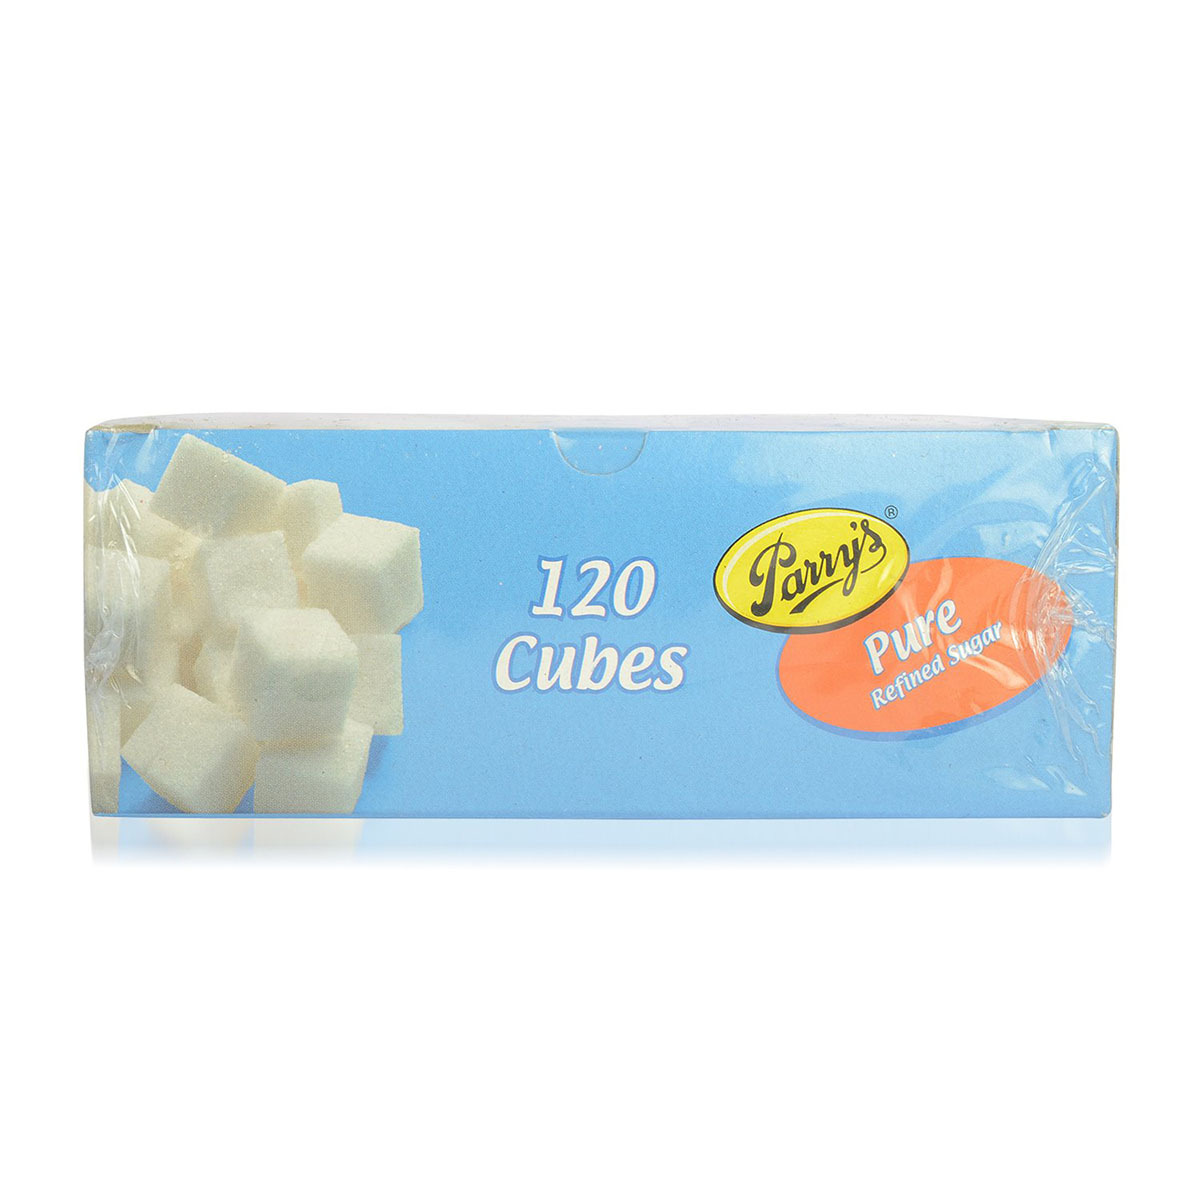 Parrys Pure Refined Cube Sugar 500g